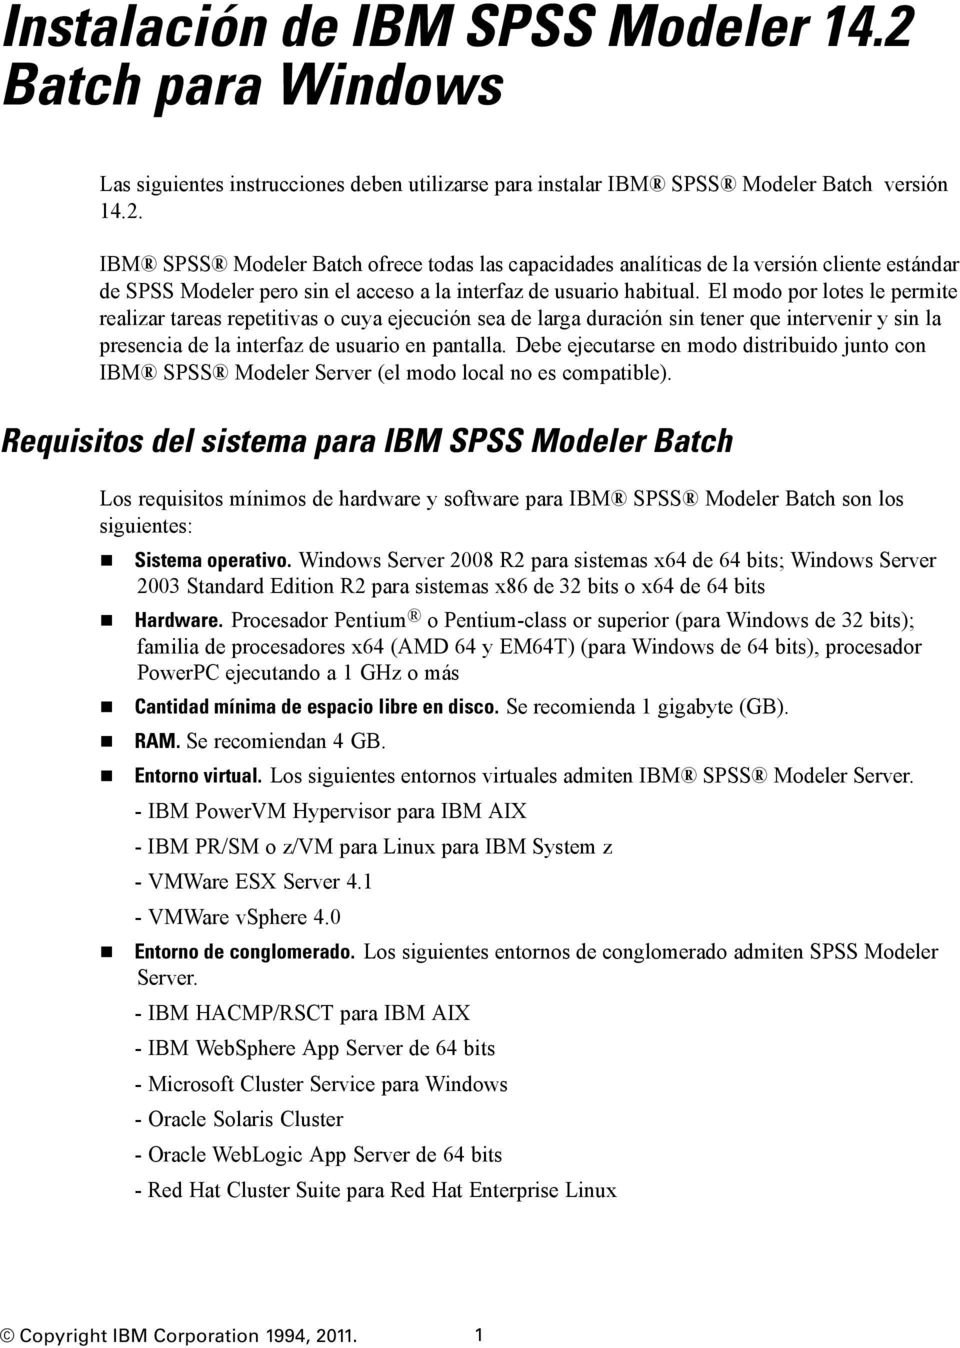 IBM SPSS Modeler Batch ofrece todas las capacidades analíticas de la versión cliente estándar de SPSS Modeler pero sin el acceso a la interfaz de usuario habitual.